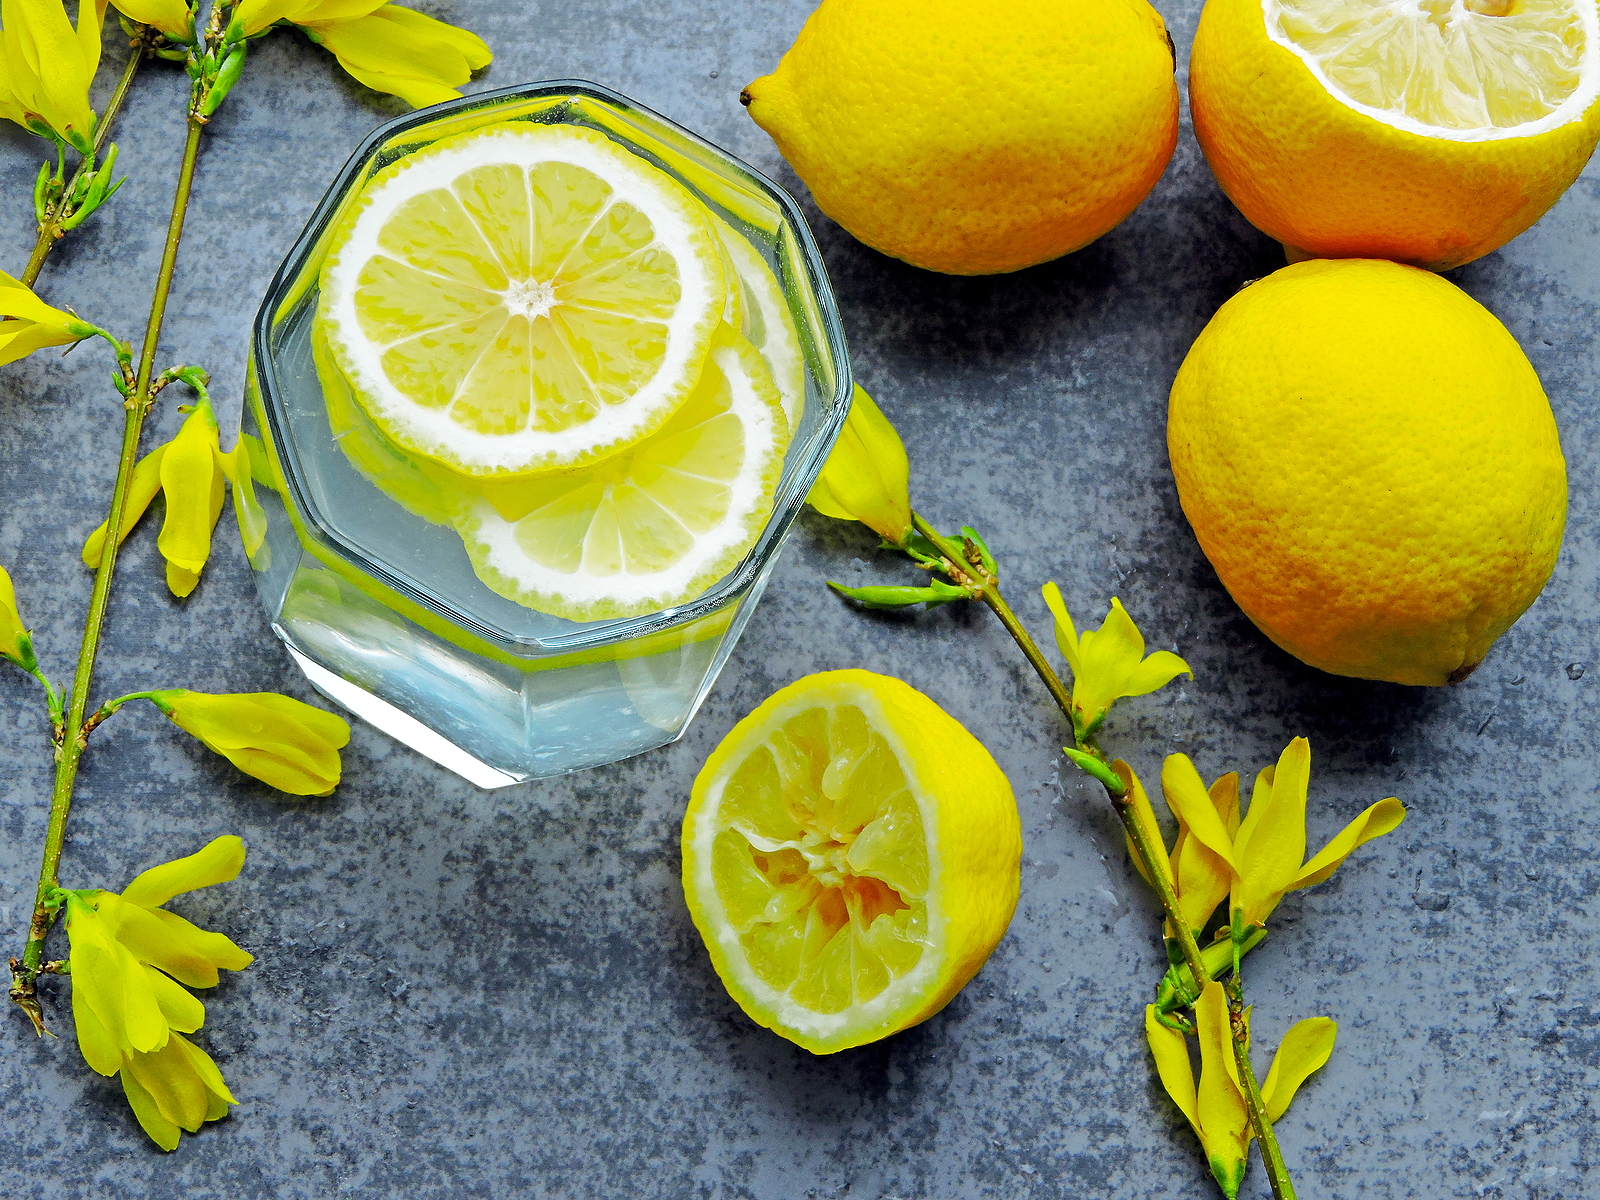 Lemon Water Benefits: ಬೇಸಿಗೆಯಲ್ಲಿ ಪ್ರತಿದಿನ 1 ಗ್ಲಾಸ್ ನಿಂಬೆ ನೀರನ್ನು ಕುಡಿಯುವುದರಿಂದ ಪ್ರಯೋಜನಗಳು, ಅನೇಕ ರೋಗಗಳು ದೂರ ಉಳಿಯುತ್ತವೆ